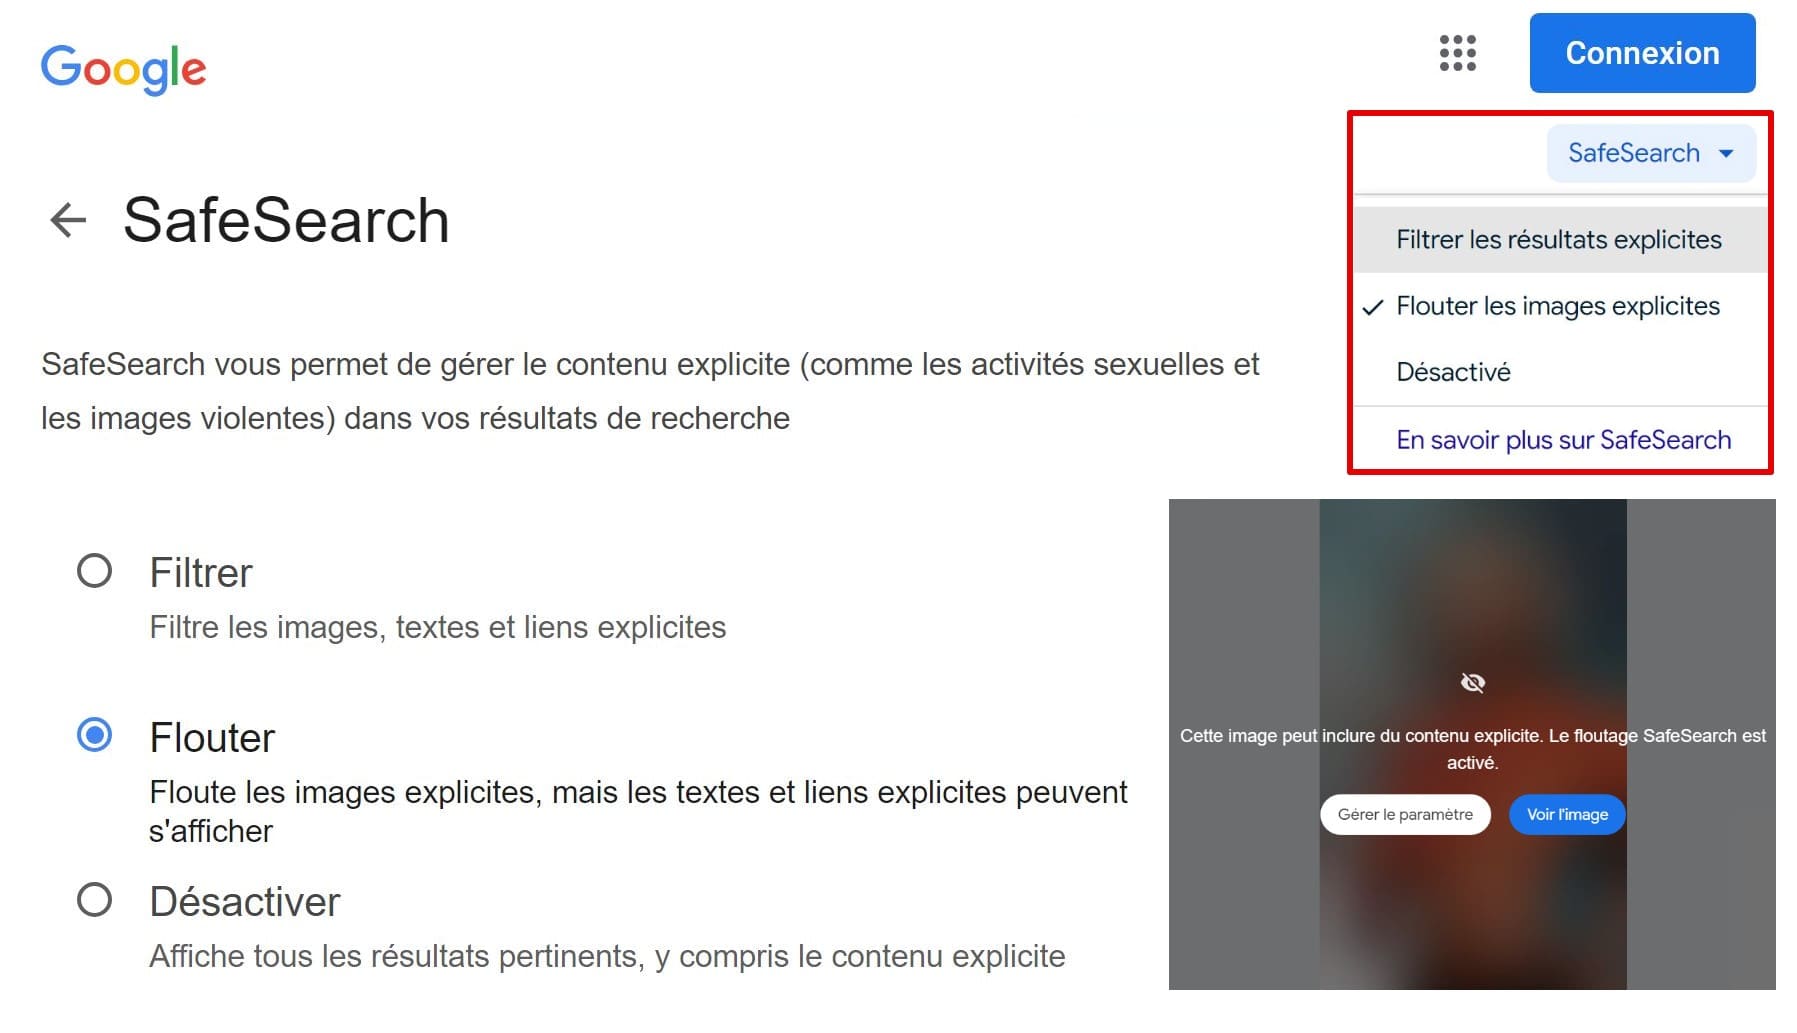 Capture d'écran montrant la page des paramètres SafeSearch de Google, avec des options permettant de filtrer et d'estomper les contenus explicites.